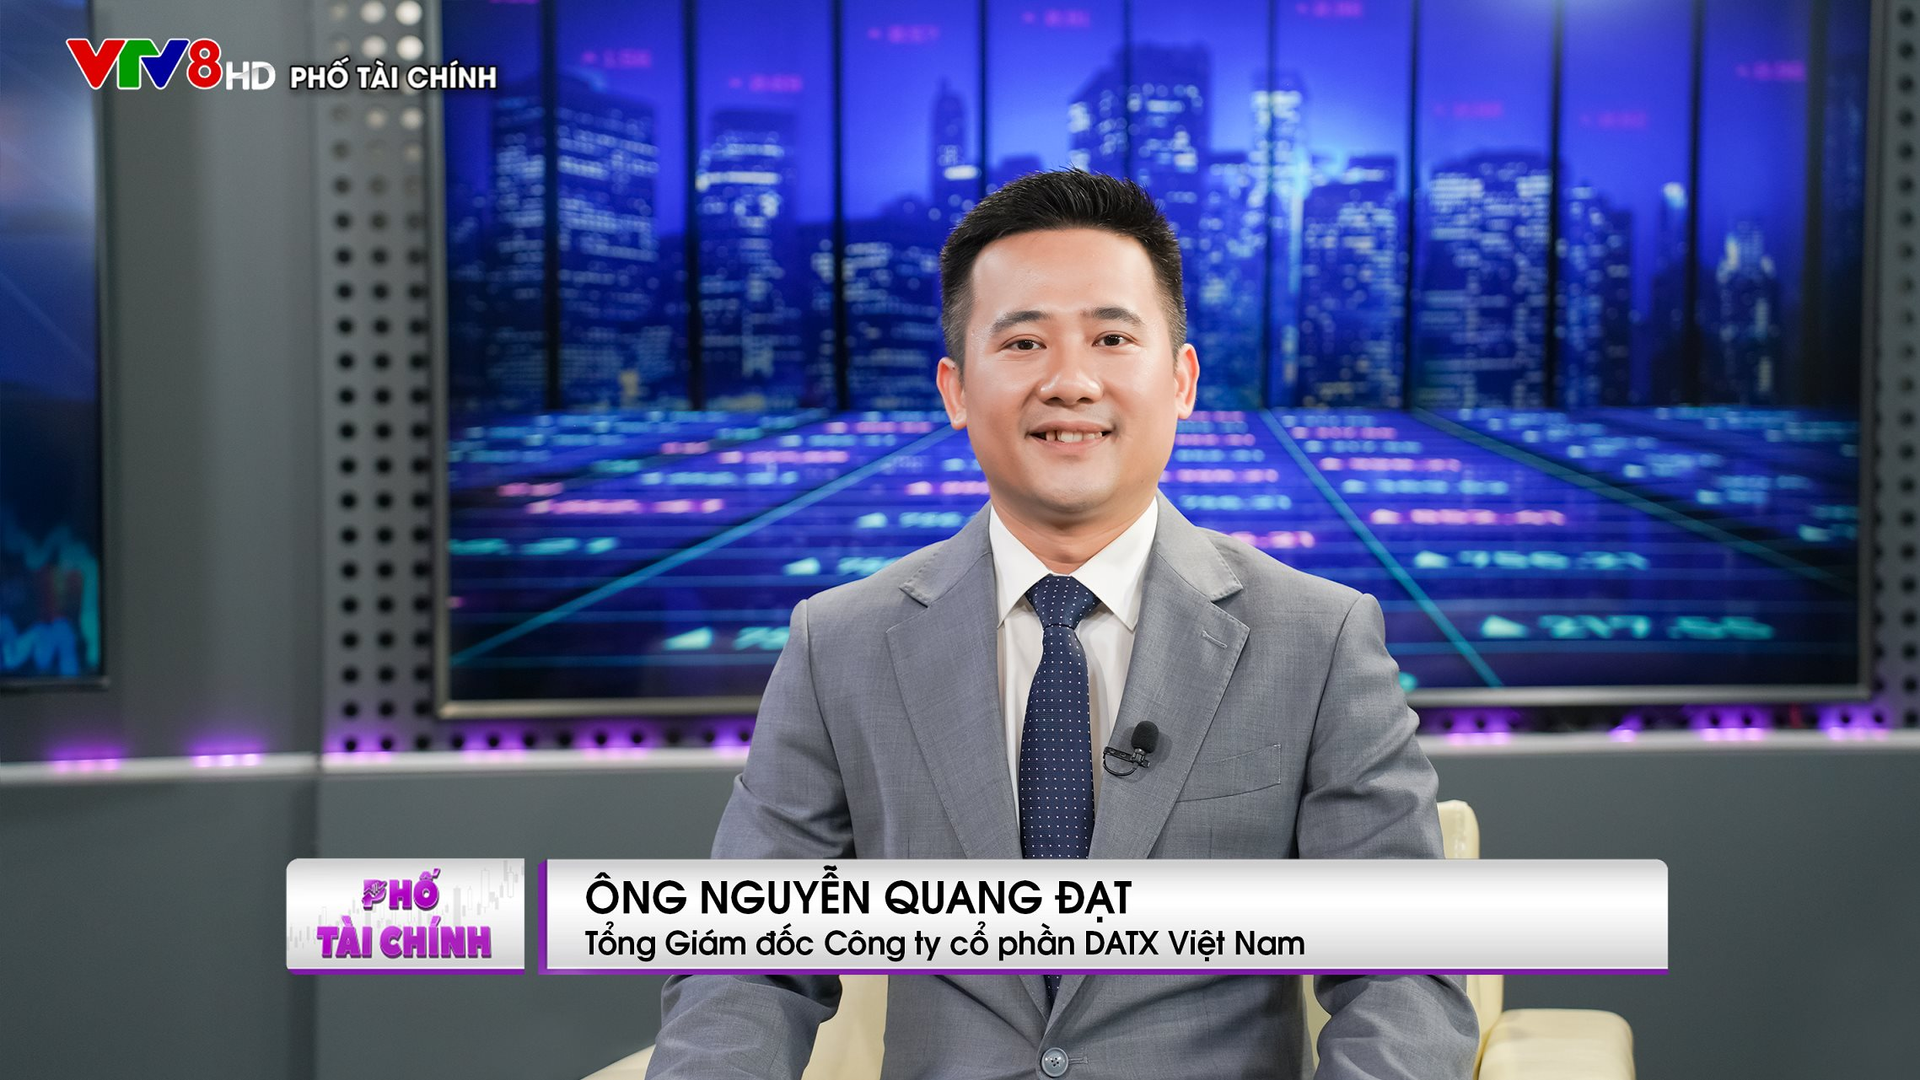 Tổng giám đốc DATX Việt Nam: Chứng khoán phái sinh đang giúp thị trường cơ sở đỡ giảm sâu trong những đợt biến động lớn - Ảnh 1.